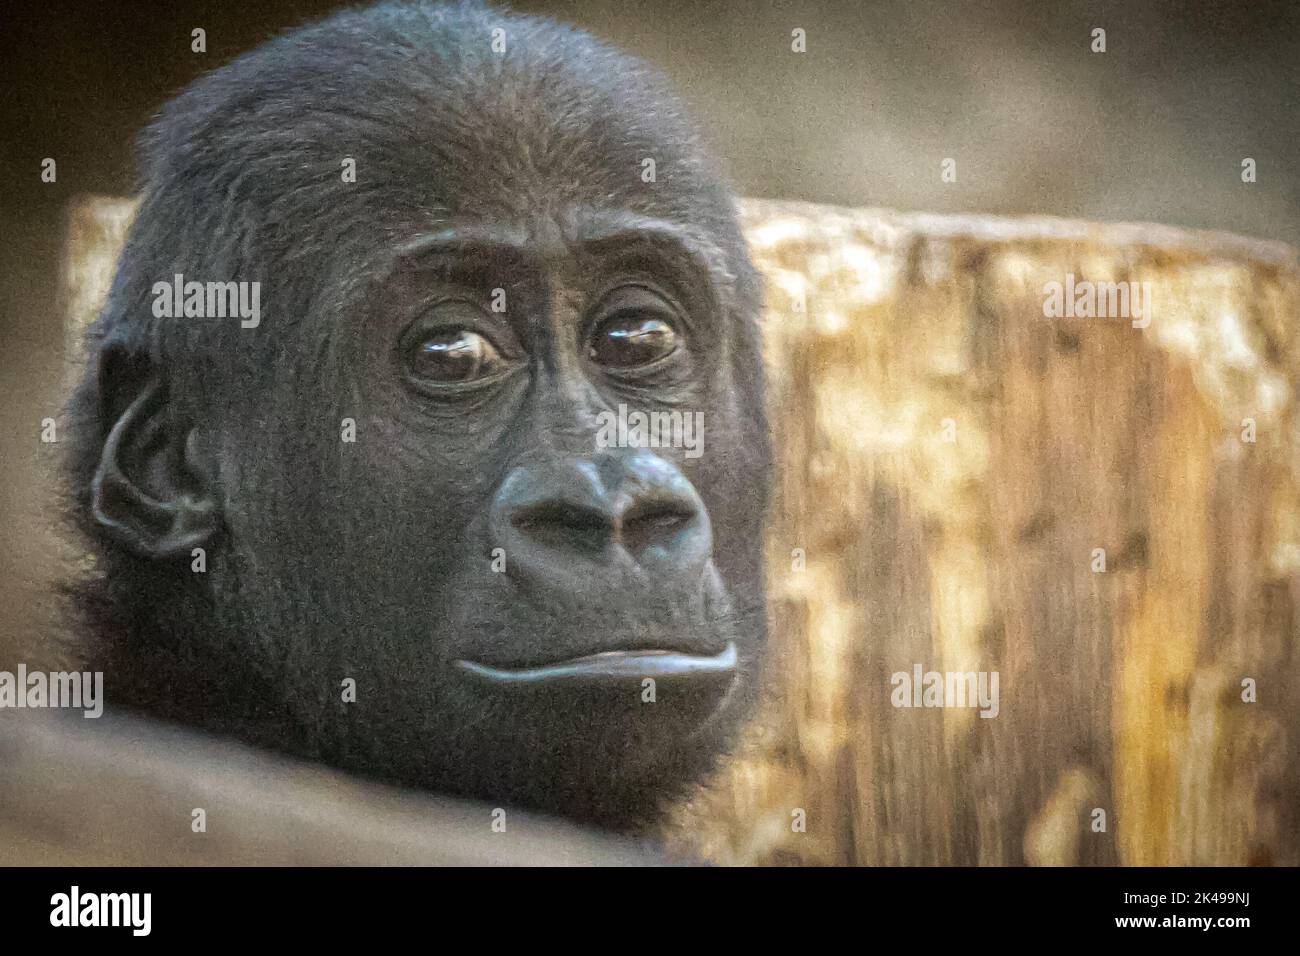 Porträt eines jungen Gorillas vor einem hölzernen Hintergrund Stockfoto